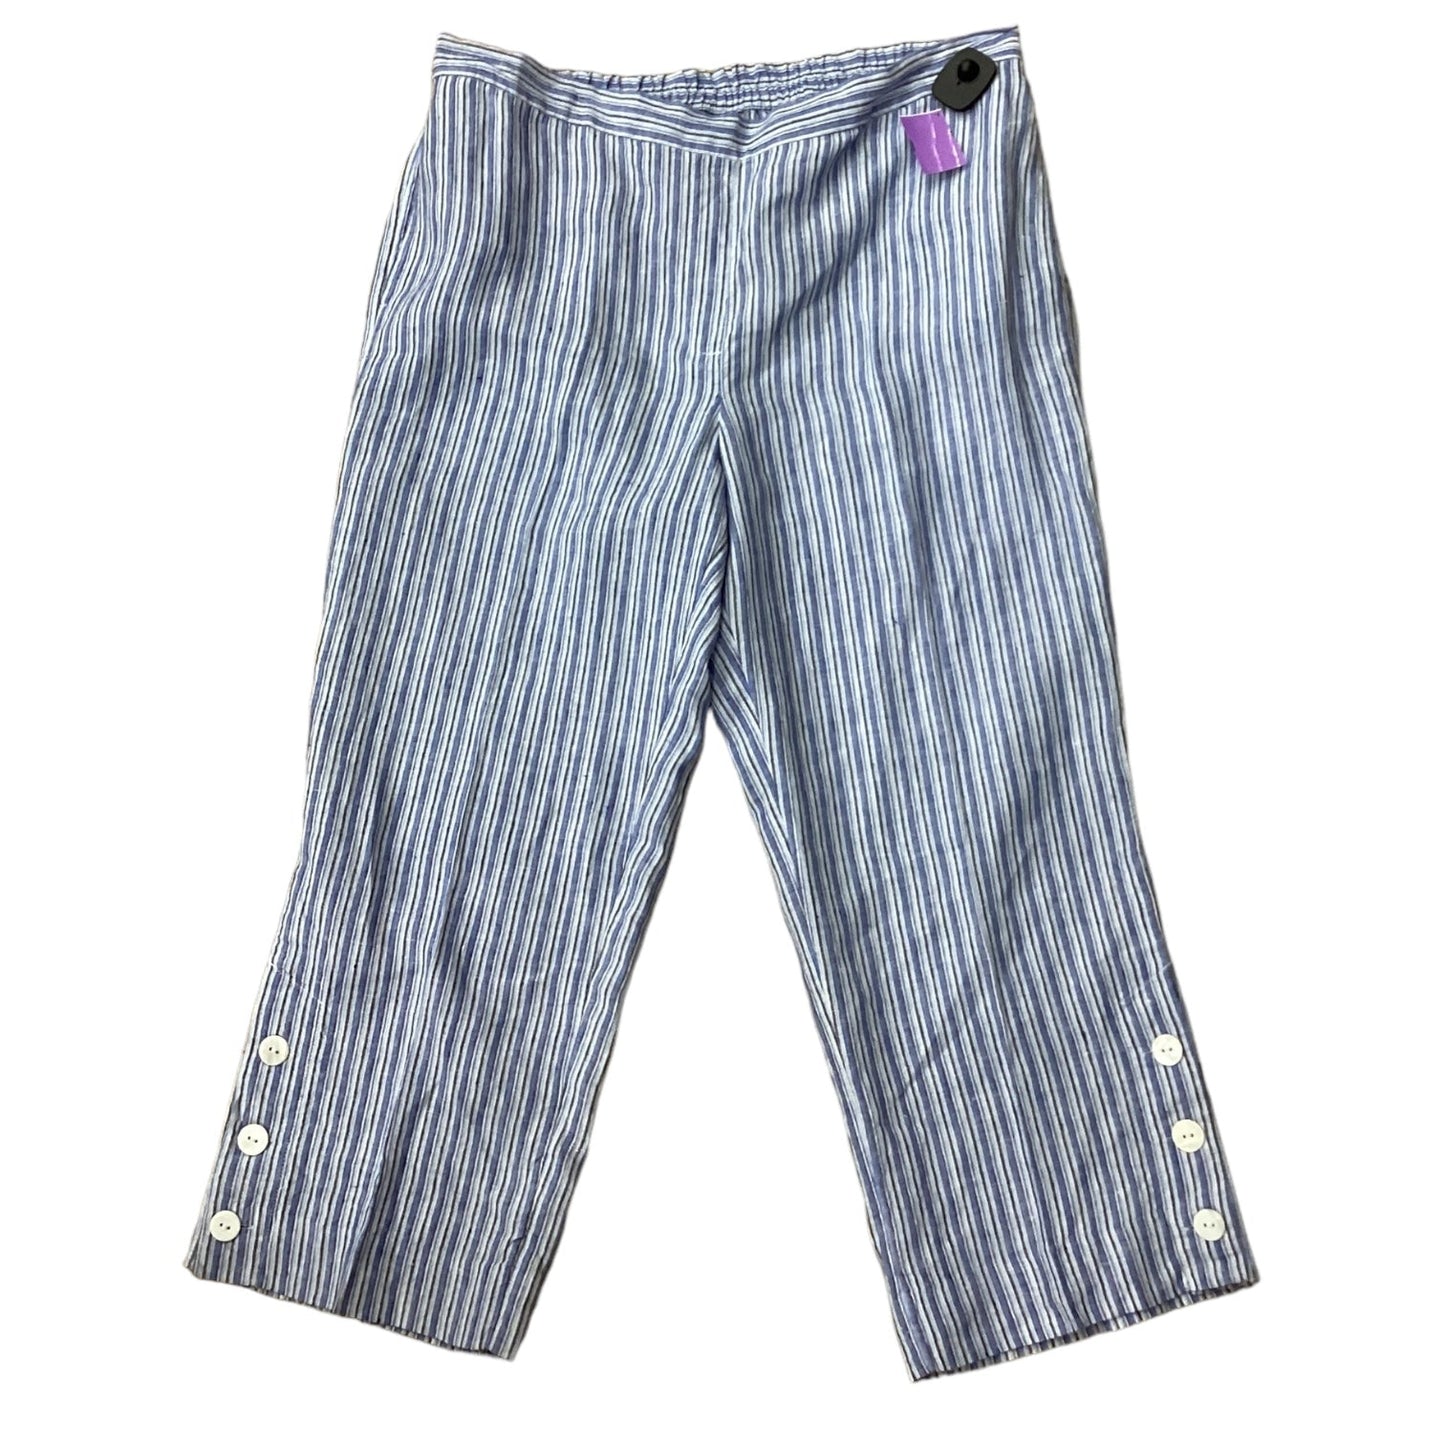 Blue Pants Linen Chicos, Size 3